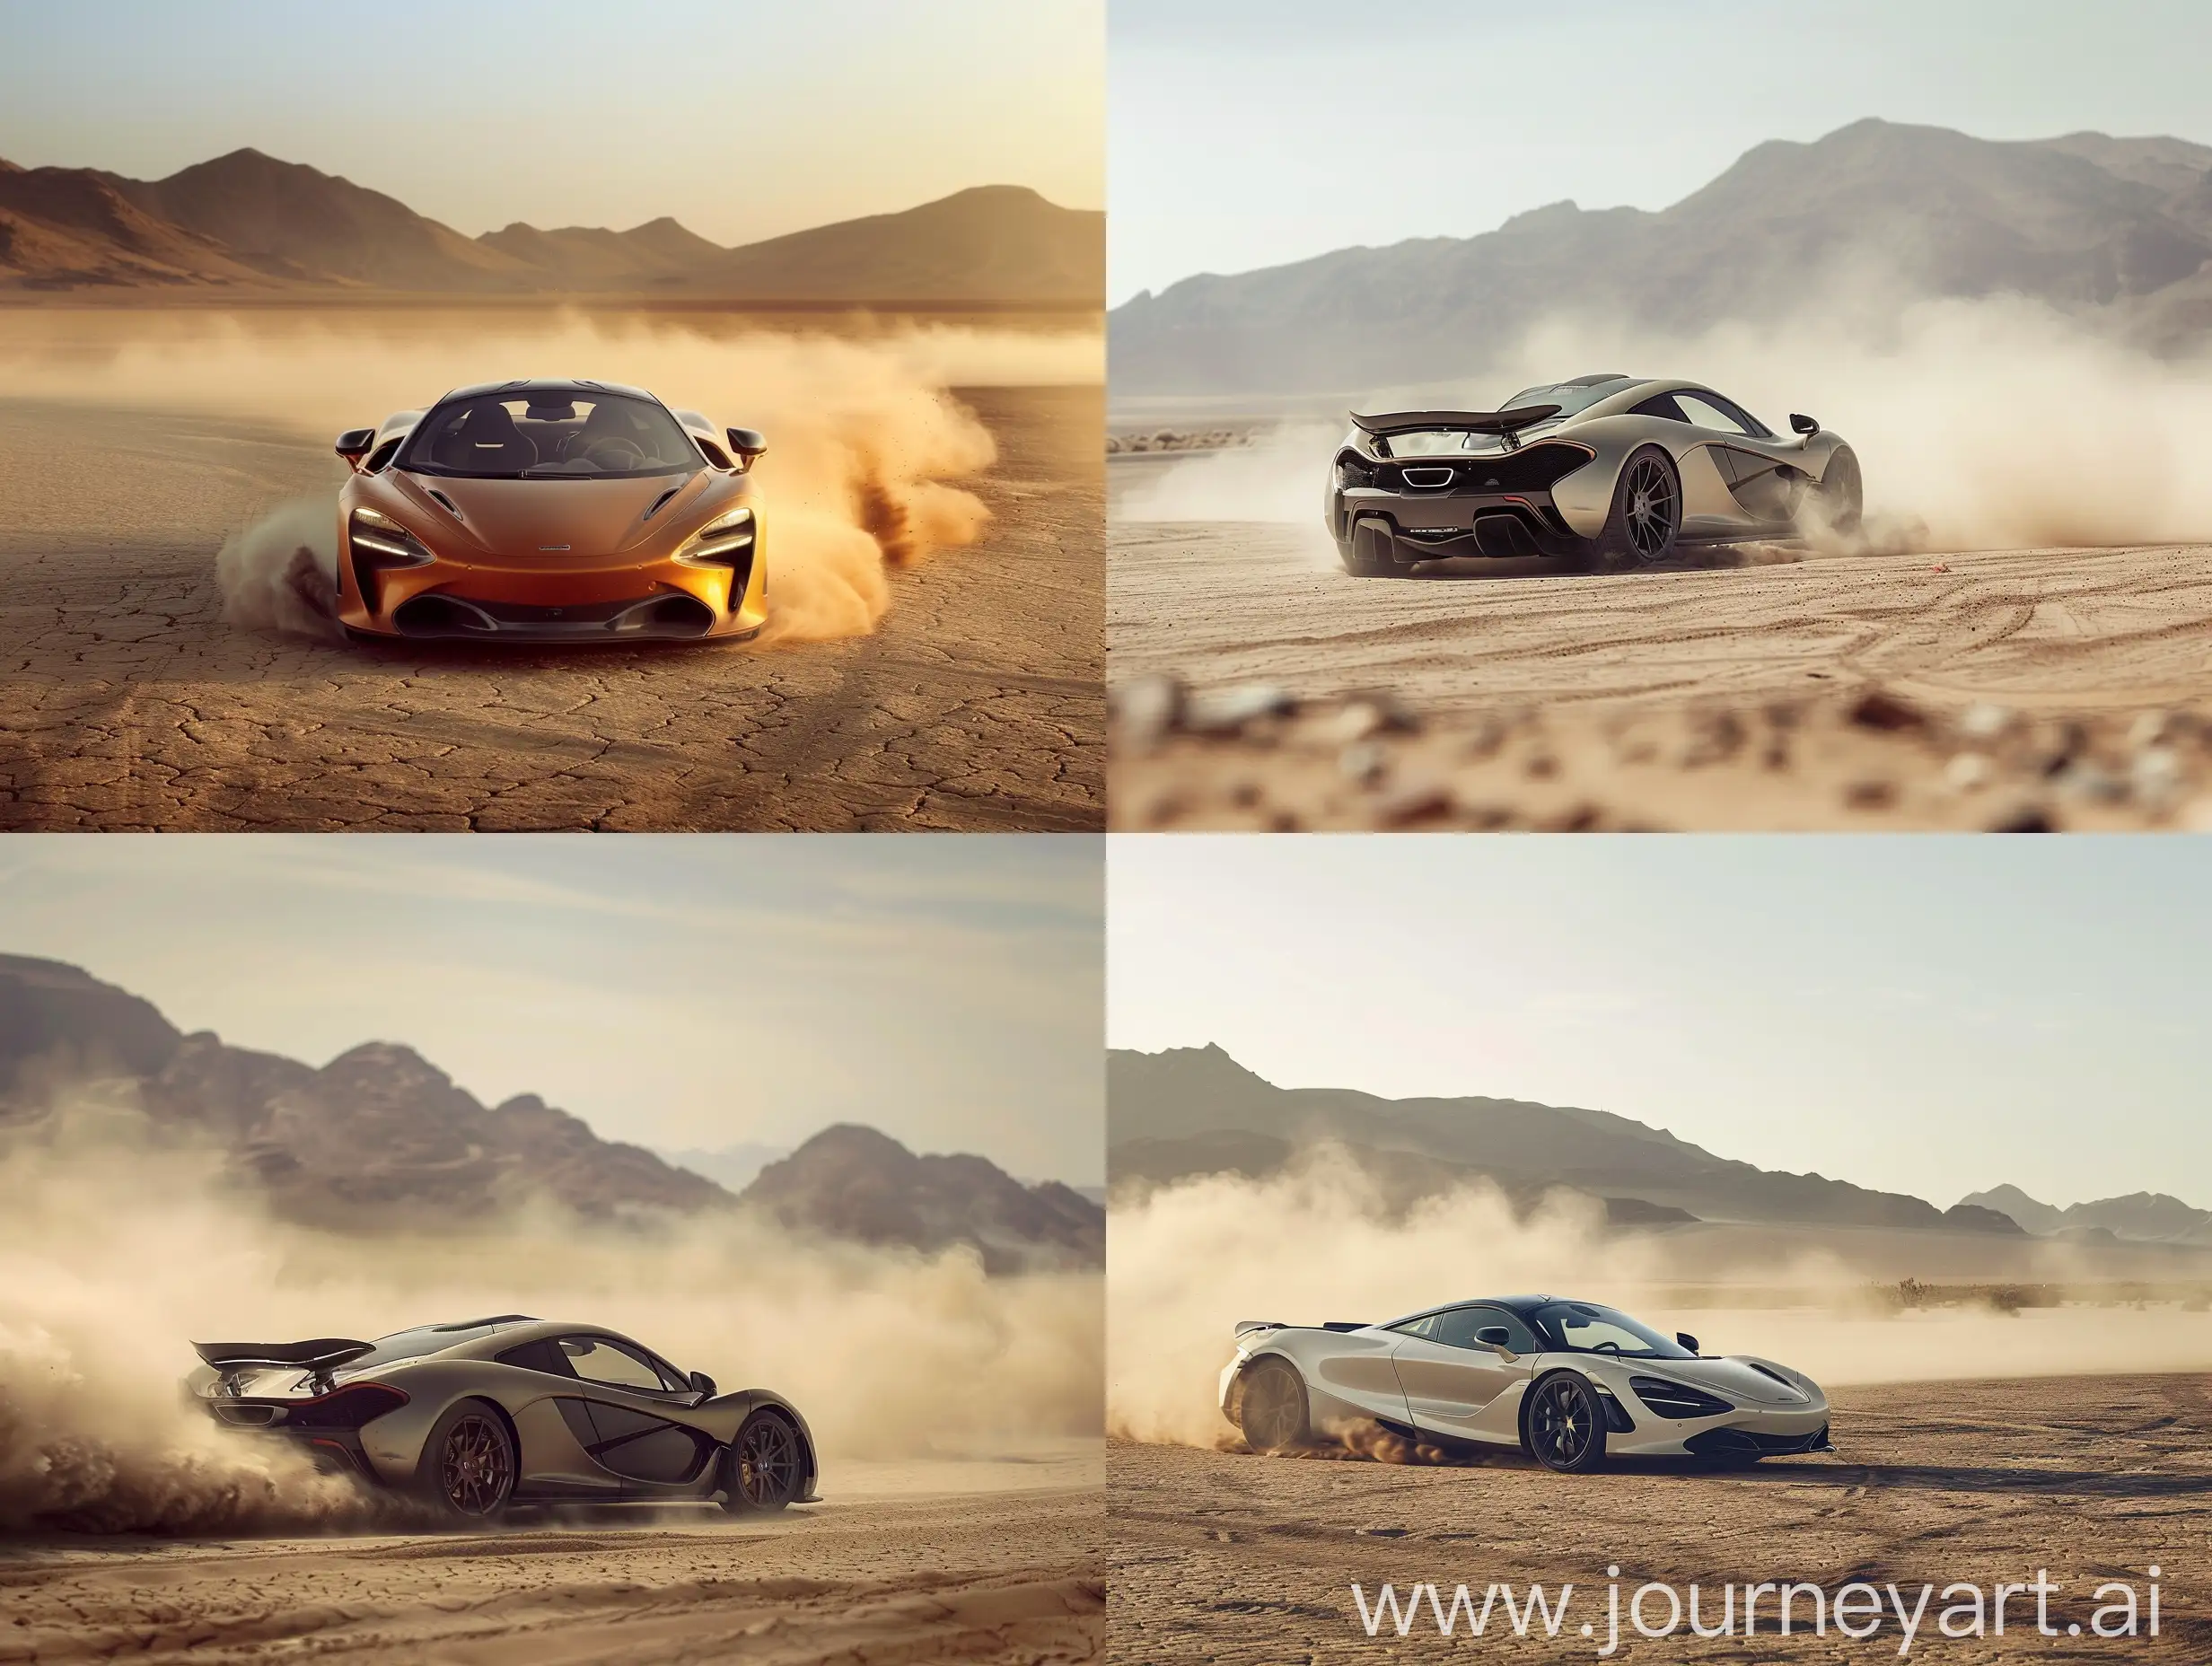 McLaren-Racing-Car-in-Desert-Dust-Storm